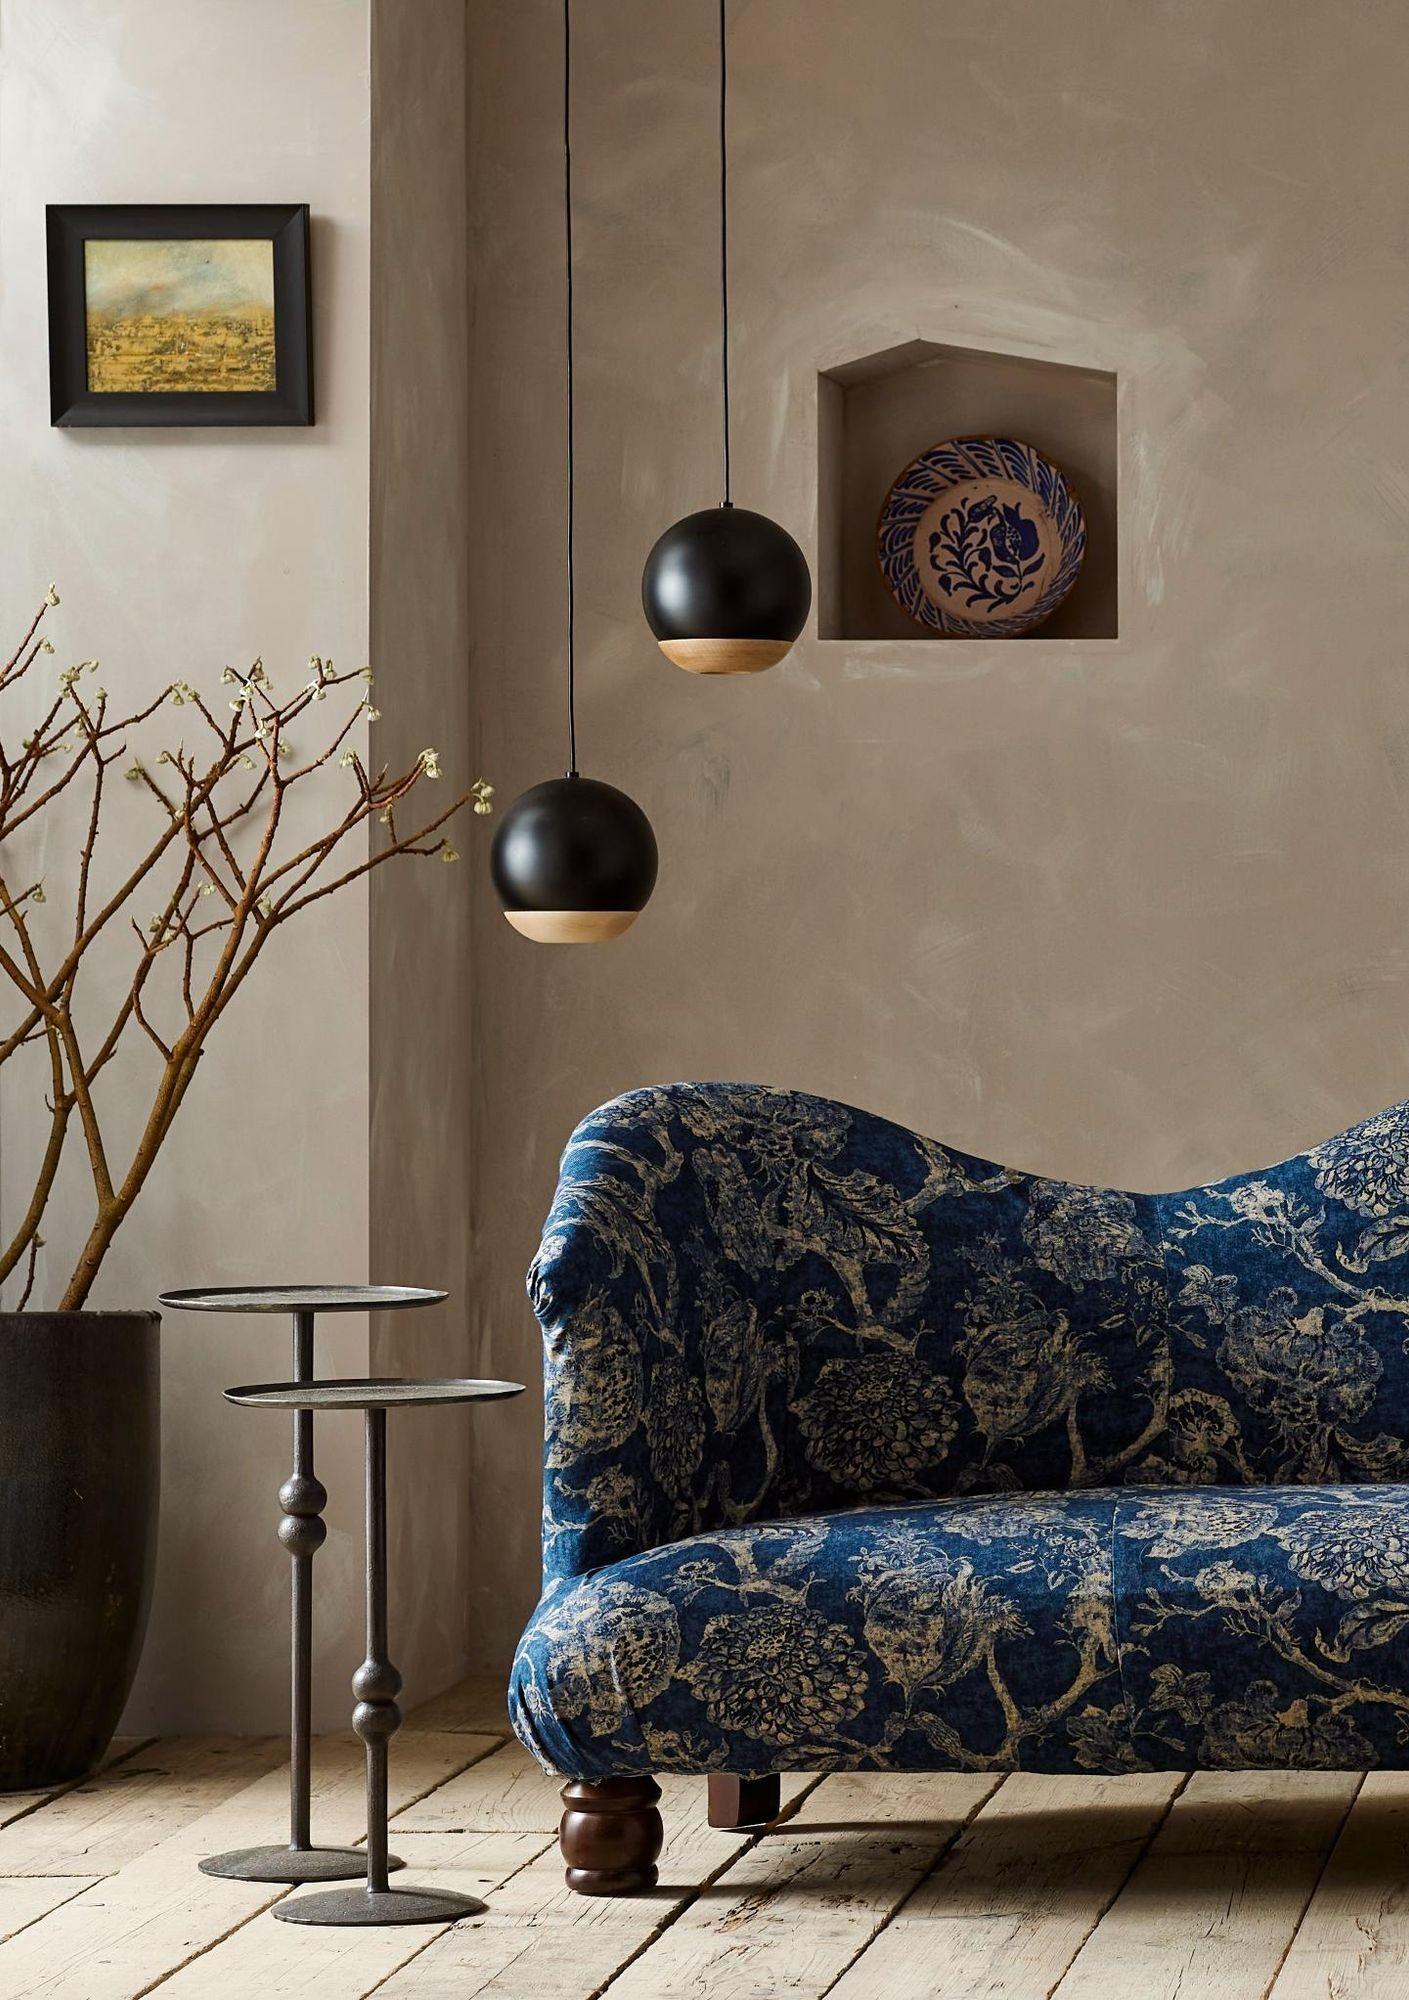 Dies ist unser Jaipur-Sofa. Inspiriert von einem originalen anglo-indischen Sofa, das wir auf unseren Reisen gefunden haben. Wir wollten ein aufsehenerregendes Möbelstück schaffen, das Design und Zweckmäßigkeit miteinander verbindet, und wir